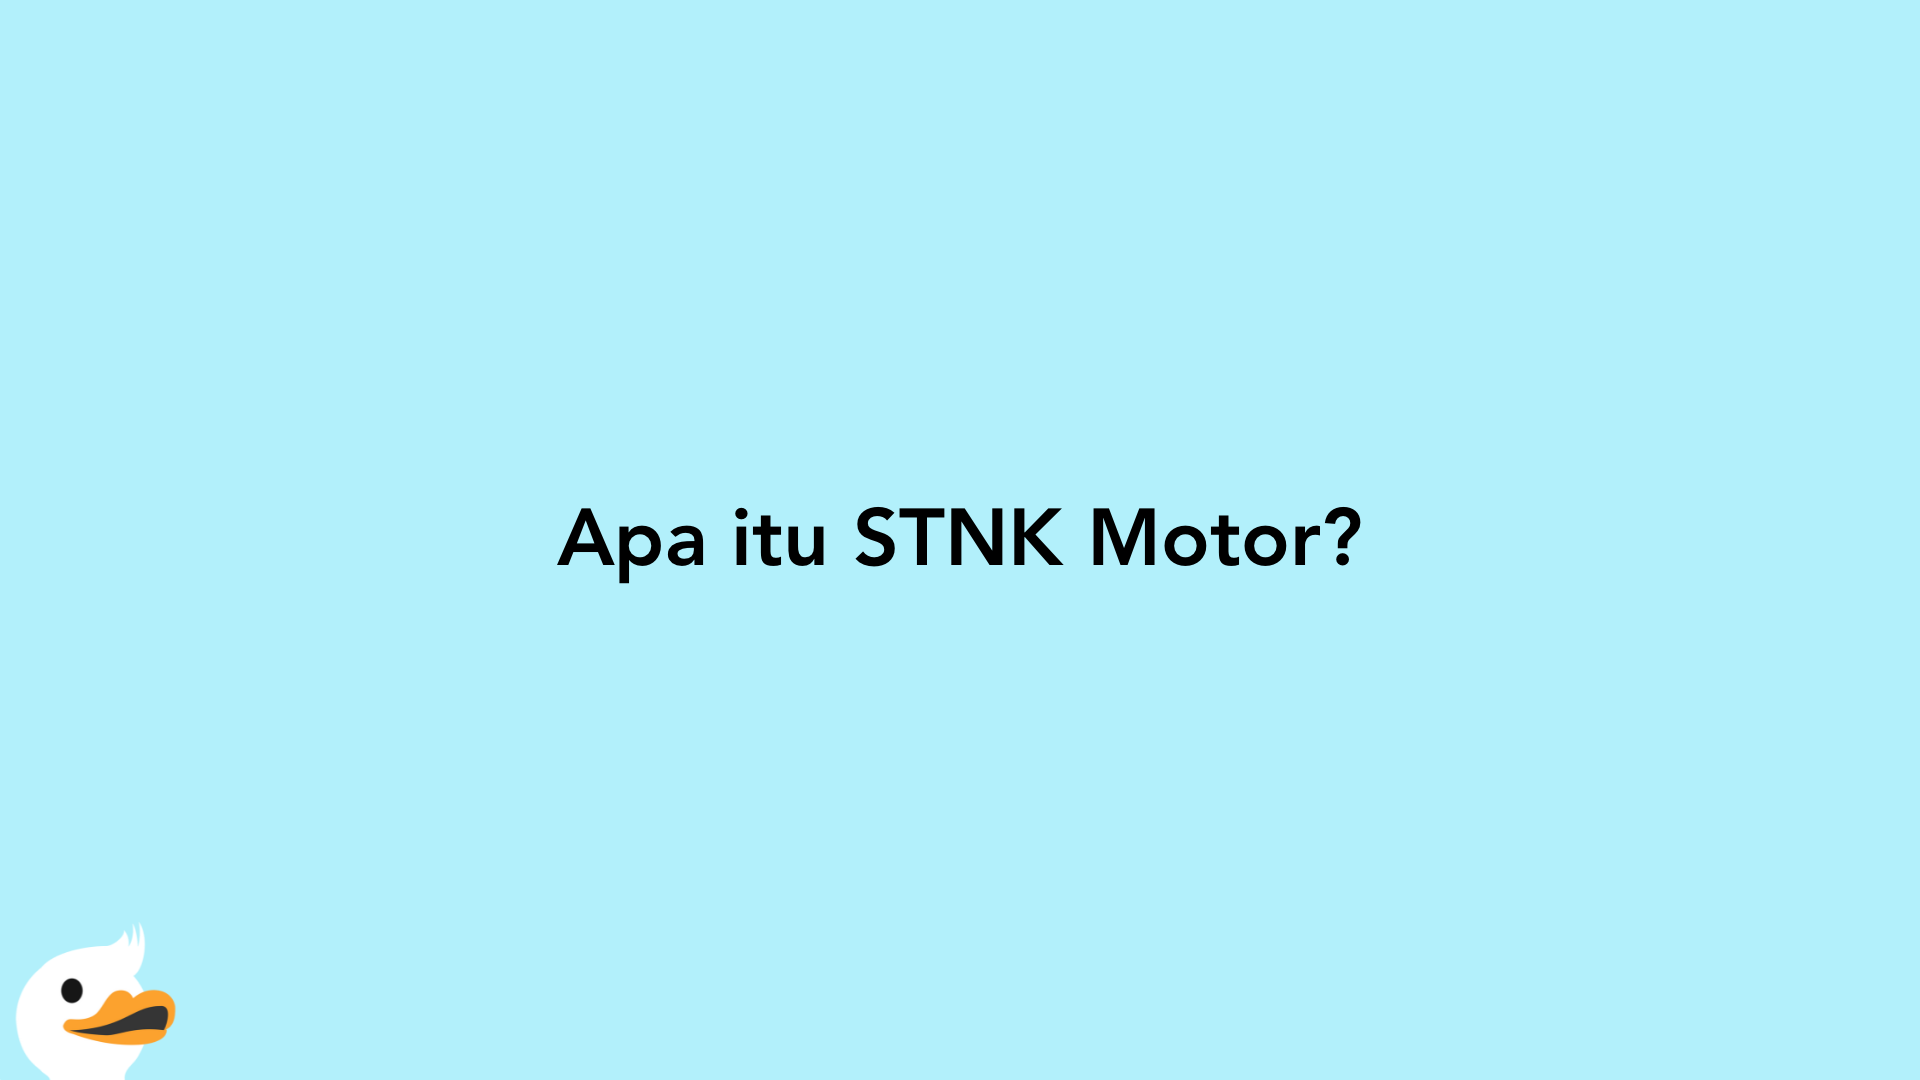 Apa itu STNK Motor?